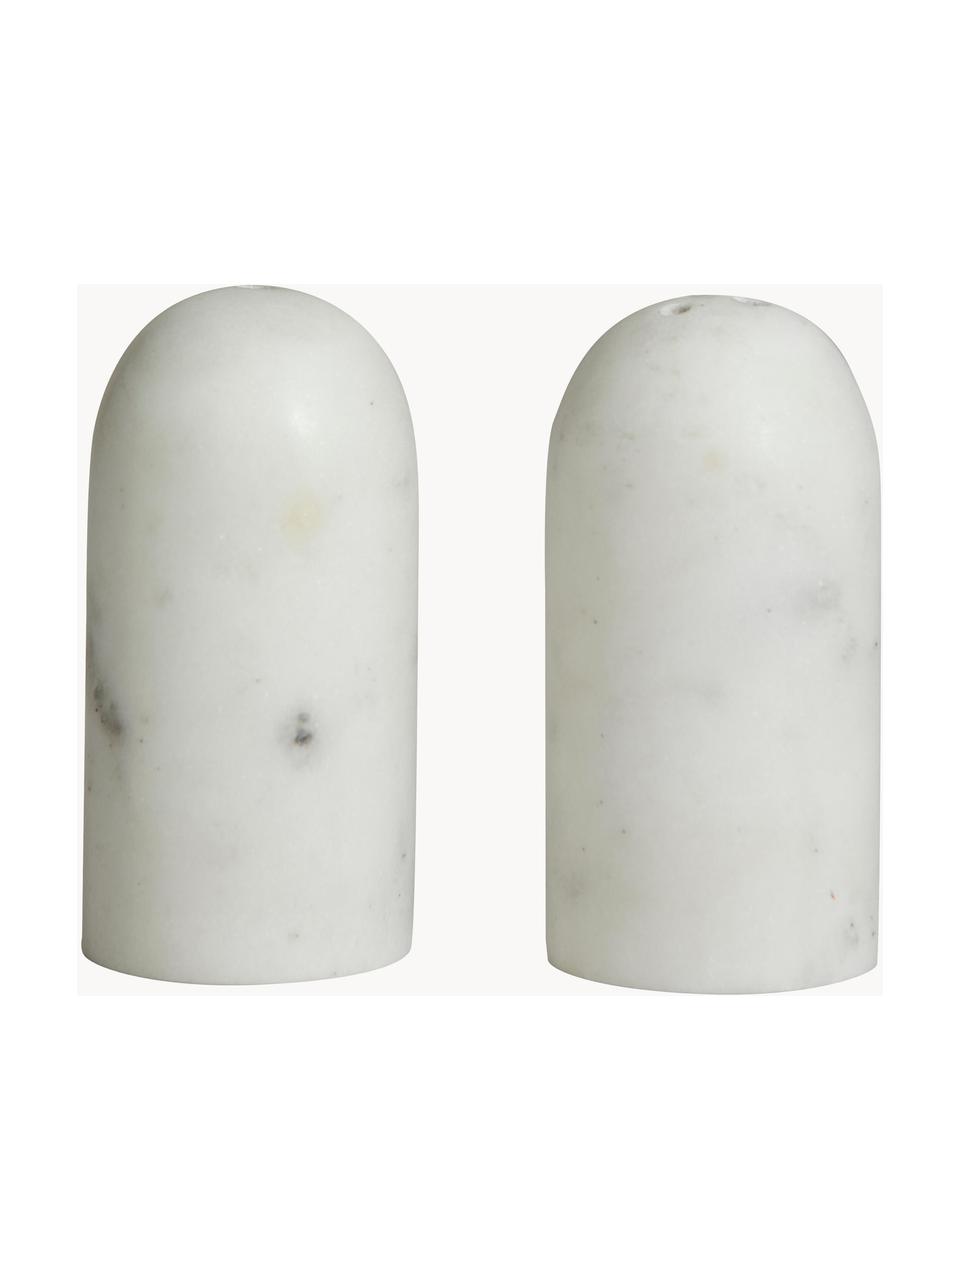 Marmor Salz- und Pfefferstreuer Isop, 2er-Set, Marmor, Weiß, marmoriert, Ø 4 x H 8 cm